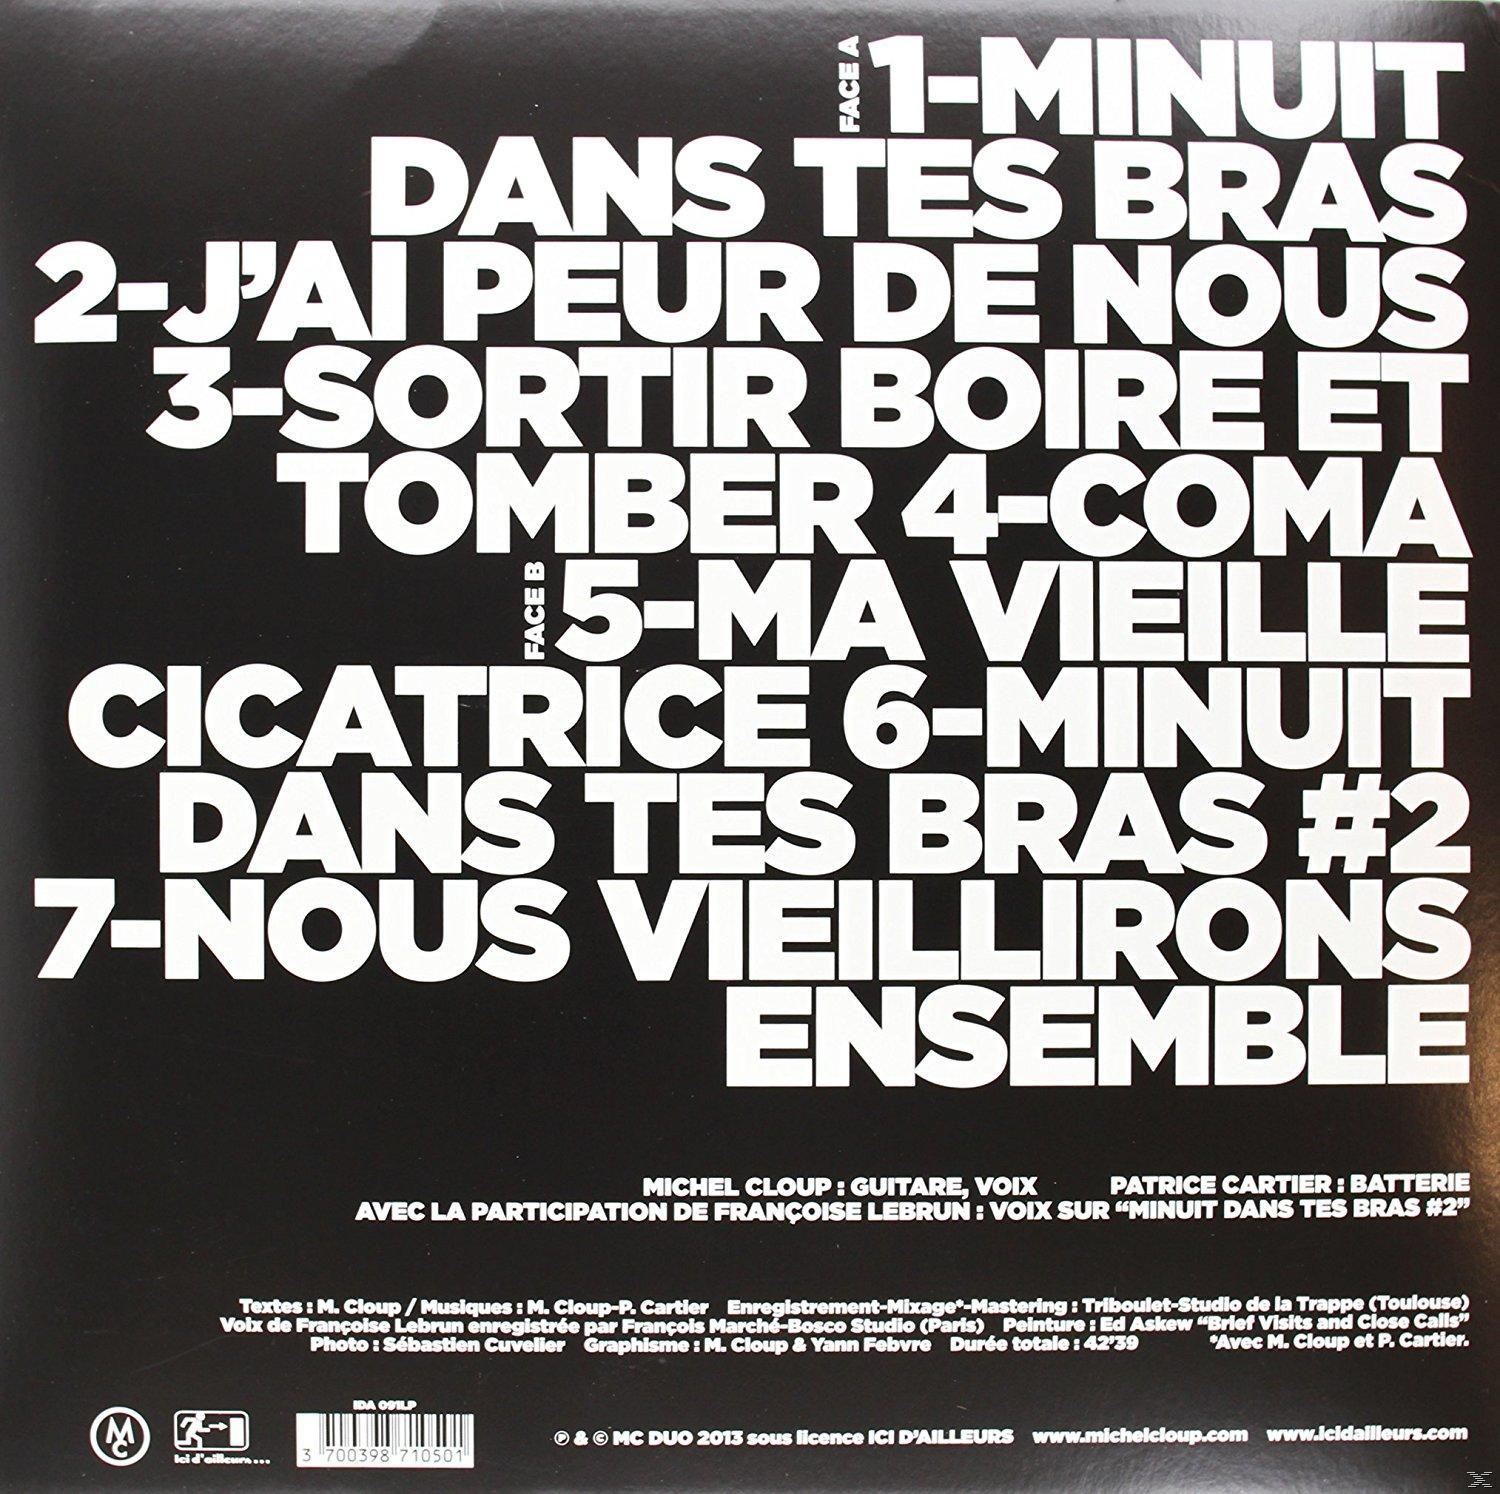 - Tes Michel Cloup - Minuit (Vinyl) Bras Dans Duo